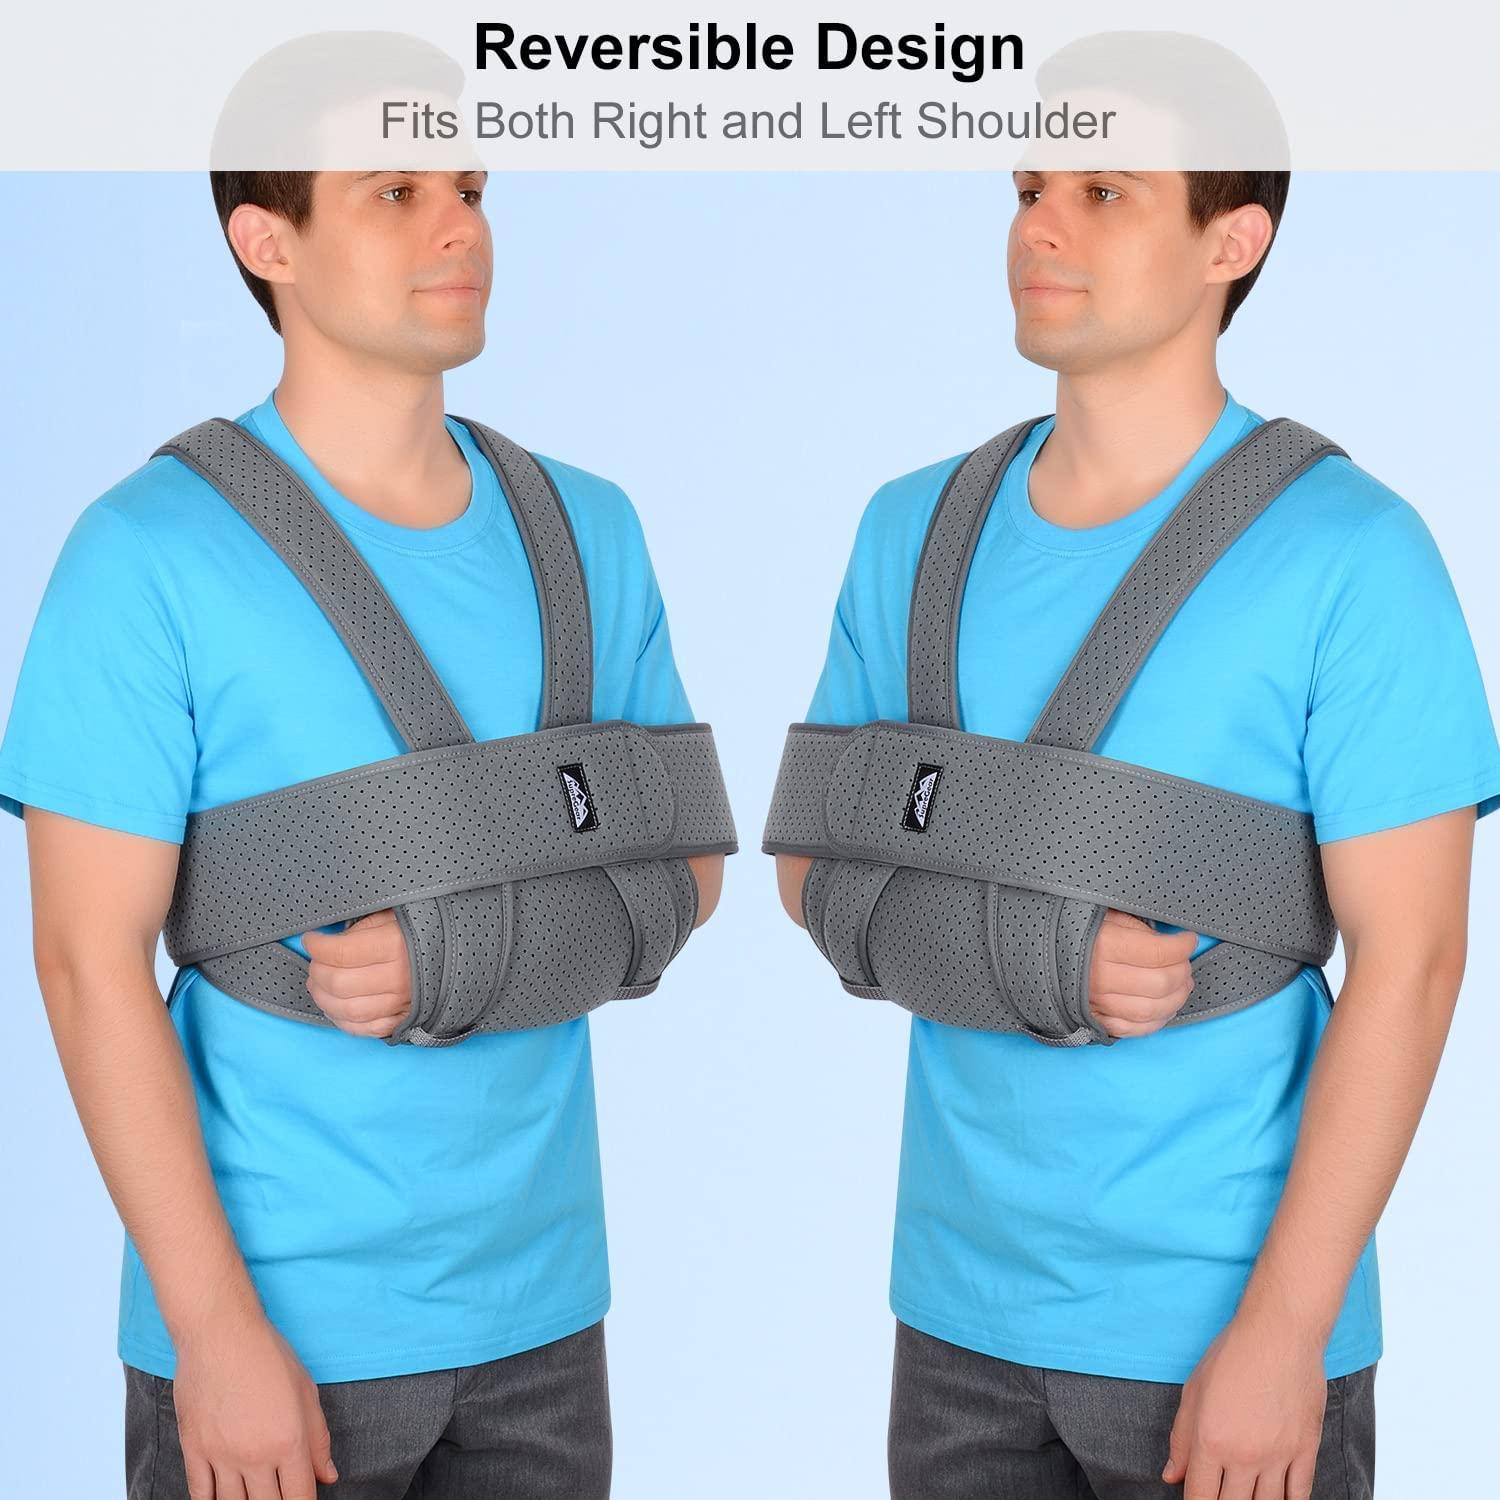 Ezy Wrap Sling and Swathe Shoulder Immobilizer – Adjustable